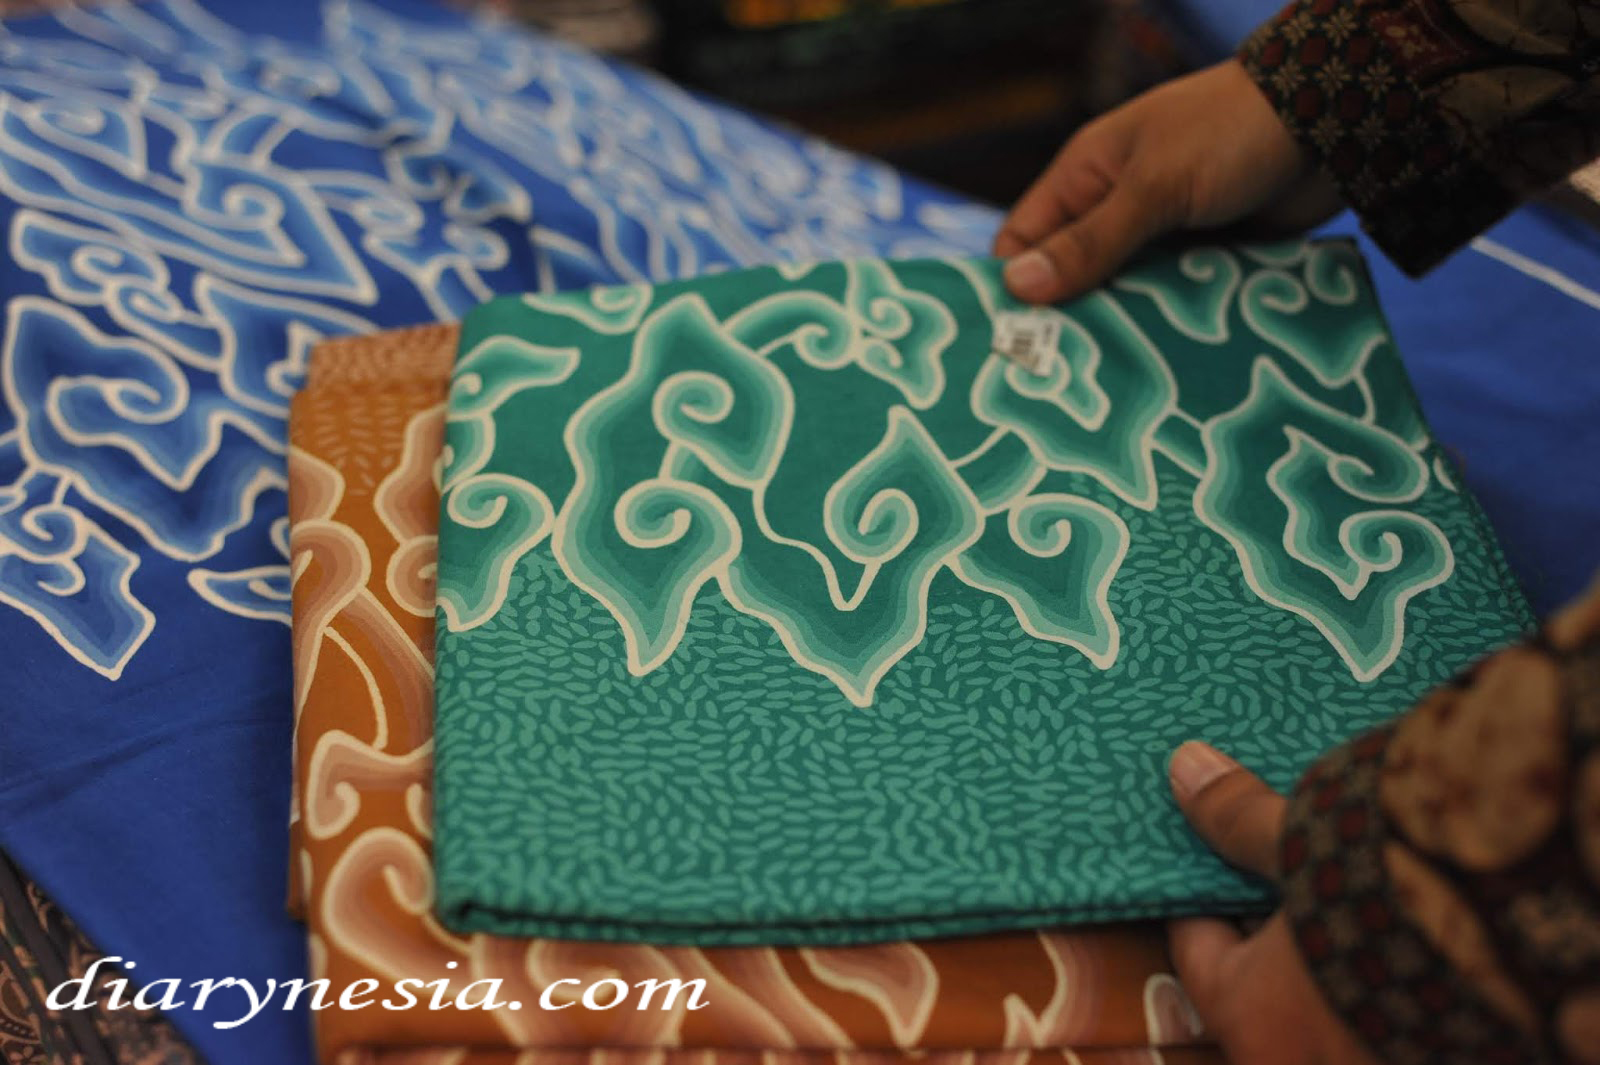 Indonesia Souvenir, Indonesia Gift, Batik fashion, diarynesia